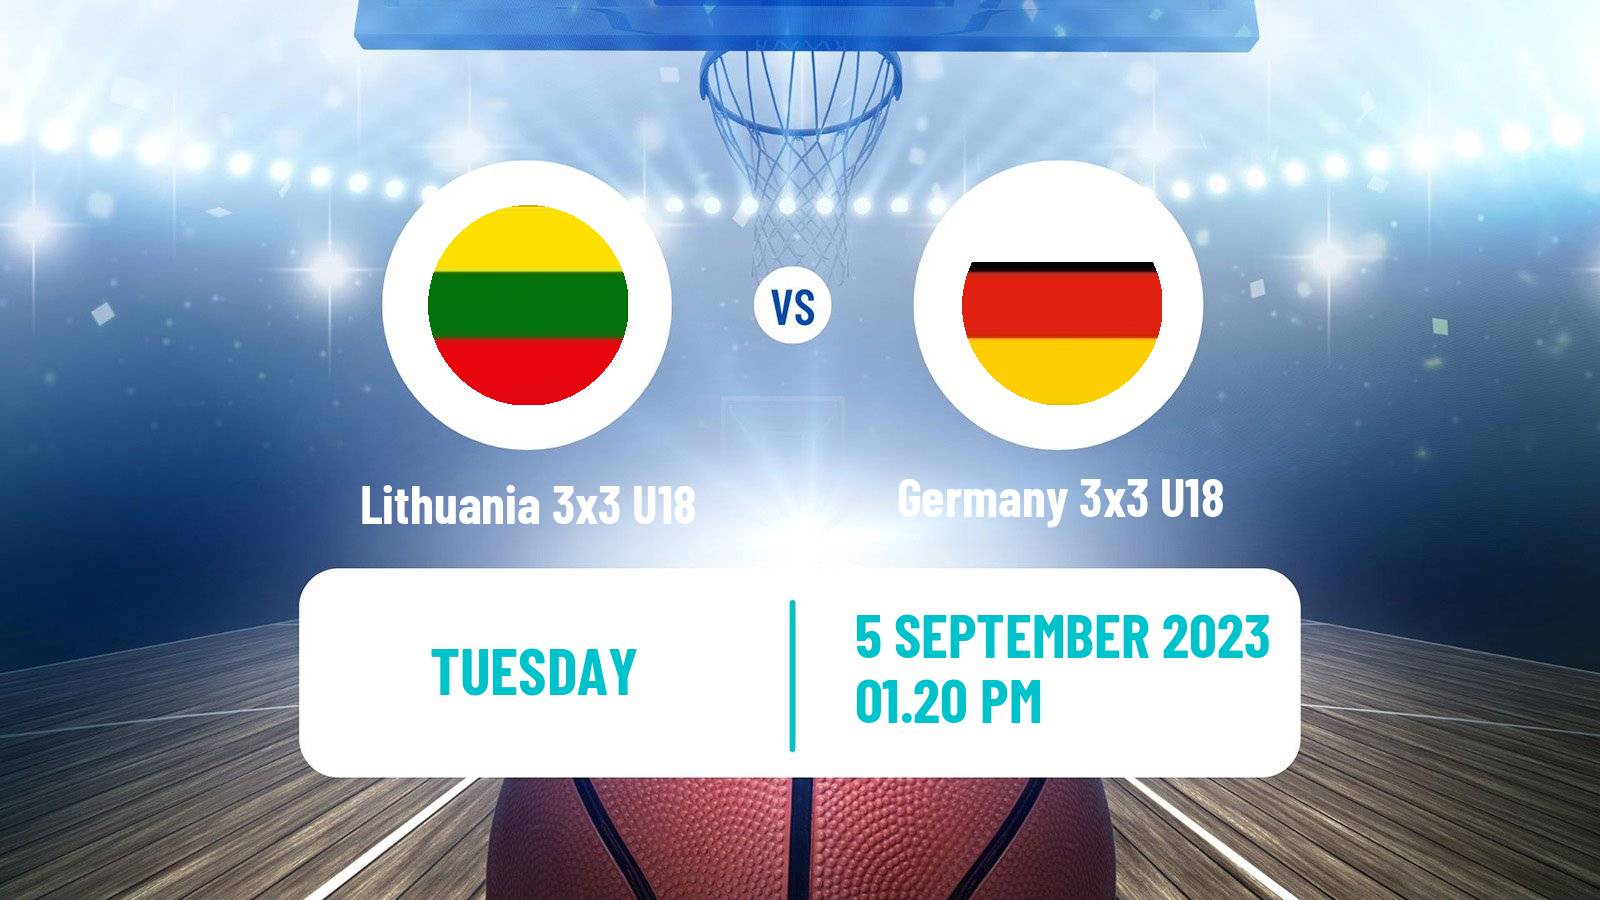 Basketball Europe Cup Basketball 3x3 U18 Lithuania 3x3 U18 - Germany 3x3 U18